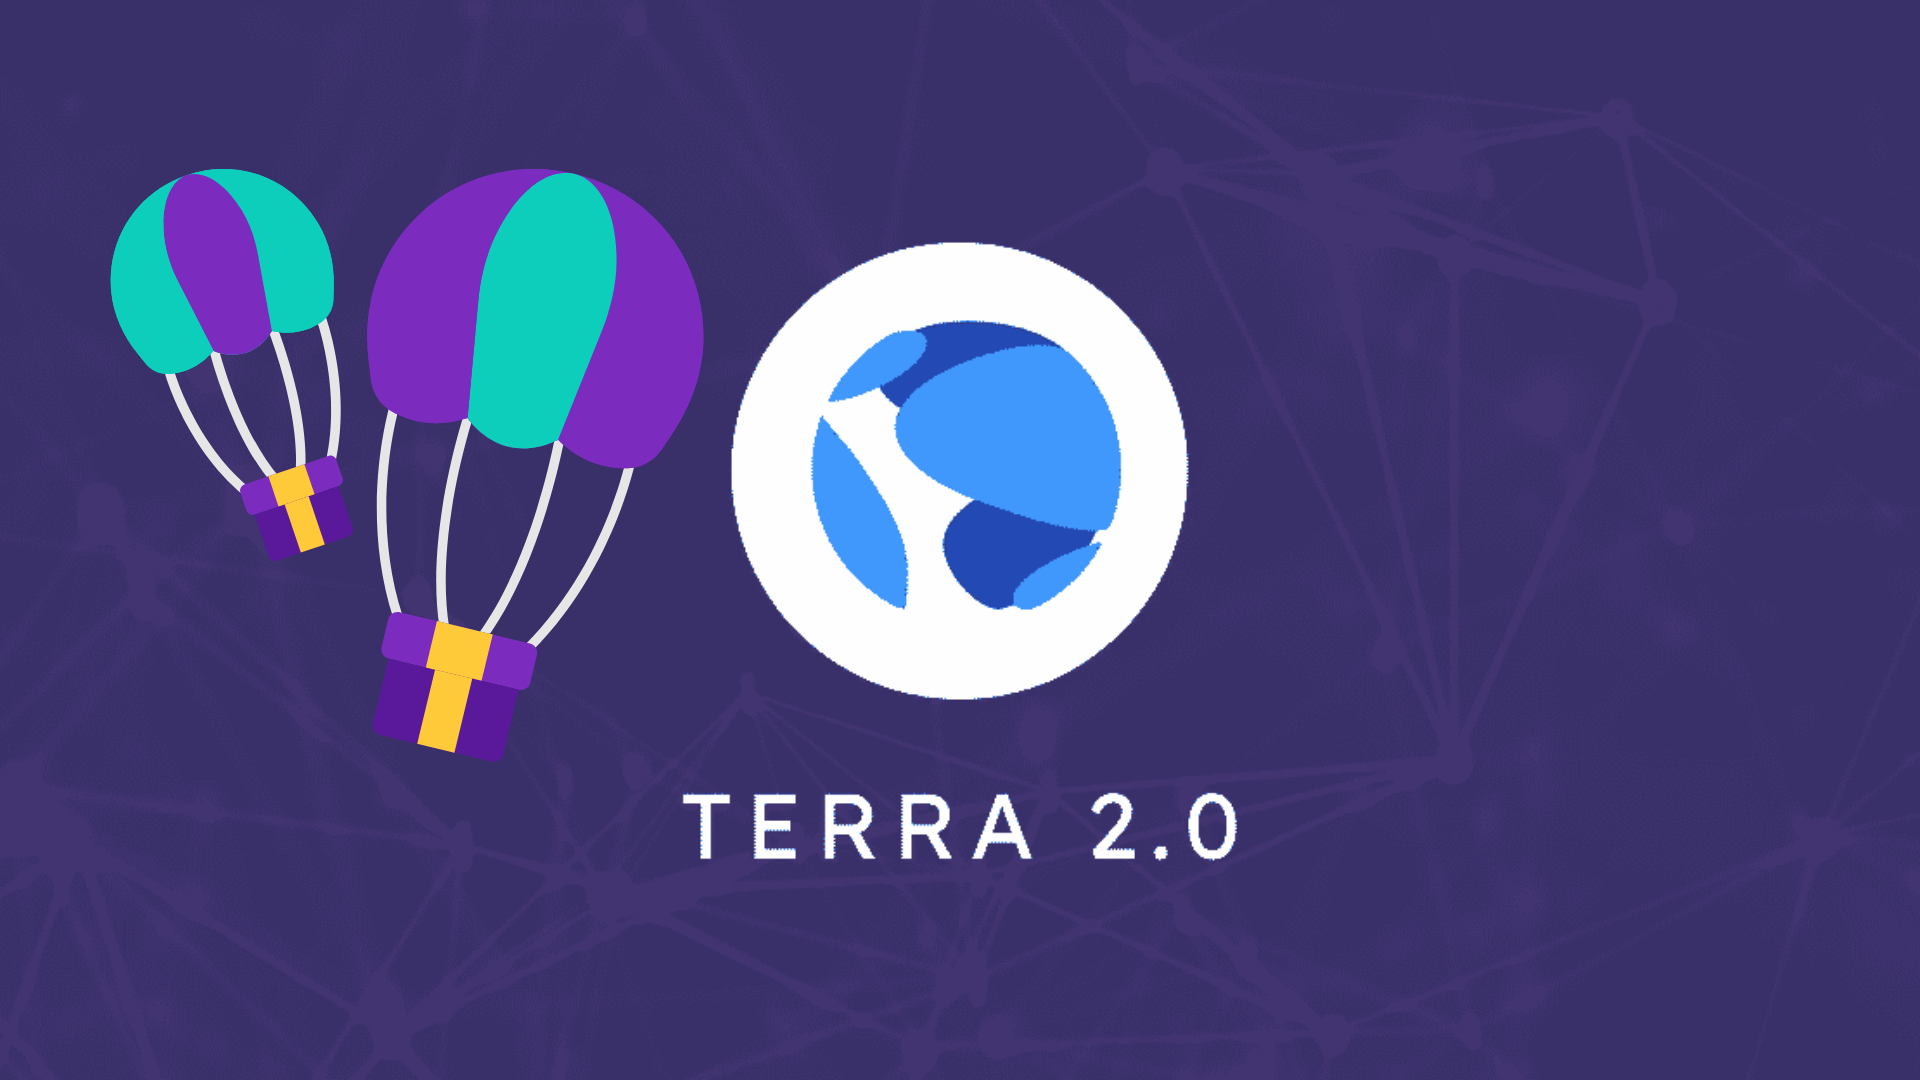  Terra prisikelia antram gyvenimui. Paleidžiama nauja blokų grandinė su LUNA 2.0 airdrop